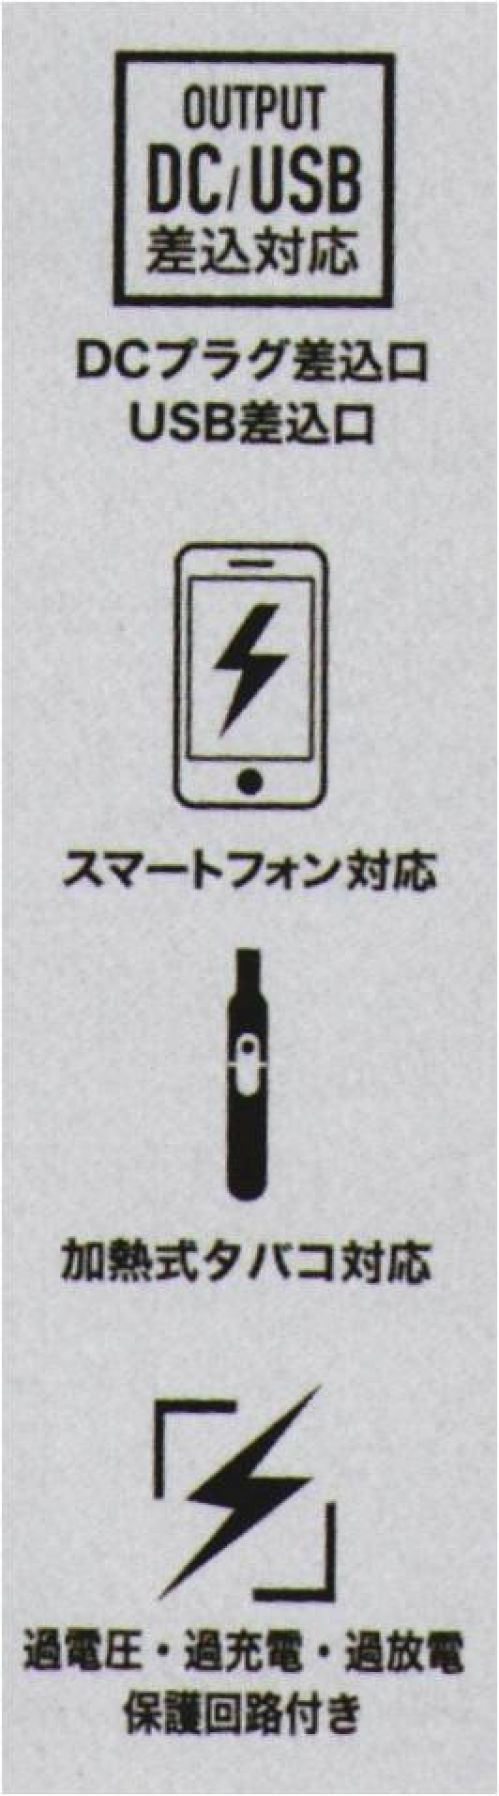 CUC 9953 マルチモバイルバッテリー 6700mAh USB口/DC口を同時搭載プロワーカーが年中使えるマルチモバイルバッテリー「なんとかする」という意味をもつDiVaiZブランドの新タイプモバイルバッテリー【DiVaiZCAVO】（ディバイスカーヴォ）。USB差込タイプで温度切替スイッチのついた電熱ウェア「duraHEAT」への使用、DC差込タイプのEFウェア「WINDZONE」への使用が可能。条件が揃えばUSB口の端末などへの充電も可能。過充電・過放電の保護回路付き。●電熱ウェア対応、EFウェア対応●iPhone/Androidスマートホン対応※1●IQOS/glo加熱式タバコ対応※1●SAFETY 過充電/過放電保護回路付●AIR-PLANE 飛行機内持ち込みOK※2●DCプラグ差込口 USB差込口●PSE認証済み●軽量、小型、大容量※充電用ACアダプタ―、microUSBケーブル 別売り※発売ロットにより「6400mAh」と混在する場合がございます。詳しくはお問合せください。※使用前に必ず本取扱説明書をよくお読みになり、正しく安全にご使用ください。取扱説明書は大切に保管し、いつでも参照できるようにしてください。※USB/DCでの同時差込みは使用できません。※1. USB端末で充電するスマートホン（入力電力5V/2A以下）、加熱式タバコ（入力電力5V/2A以下）については、基本的に充電可能ですが、対応する機種の使用であってもすべての状況で動作を保証するものではありません。※2. 空港会社の規定によっては例外がある場合がございます。予めご了承ください。※この商品はご注文後のキャンセル、返品及び交換は出来ませんのでご注意下さい。※なお、この商品のお支払方法は、先振込(代金引換以外)にて承り、ご入金確認後の手配となります。 サイズ表